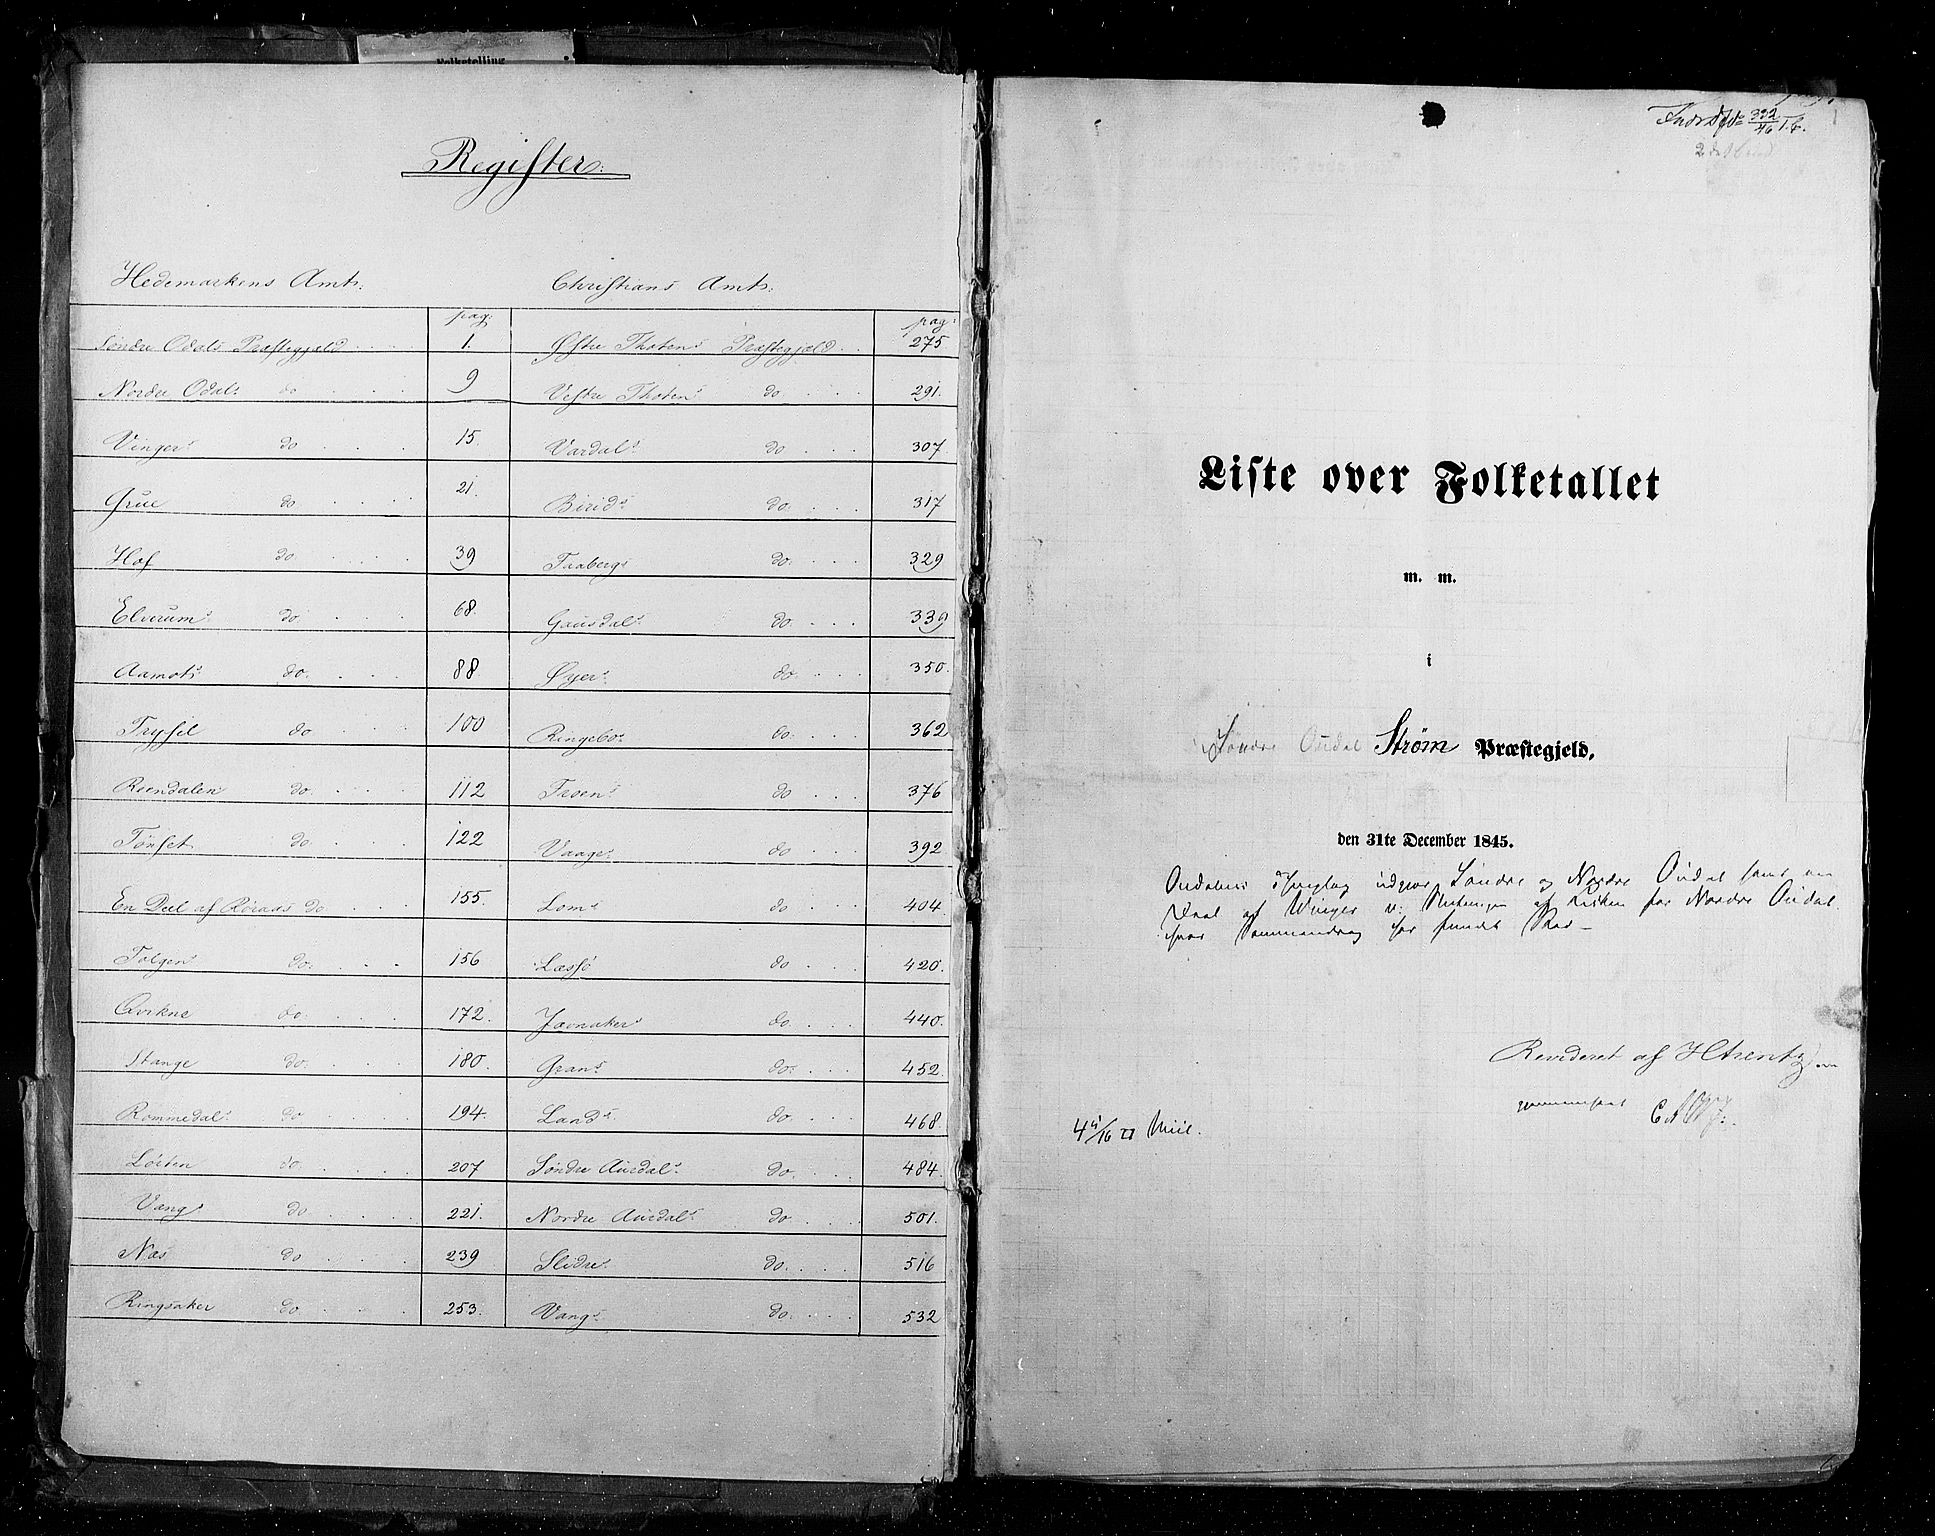 RA, Census 1845, vol. 3: Hedemarken amt og Kristians amt, 1845, p. 1